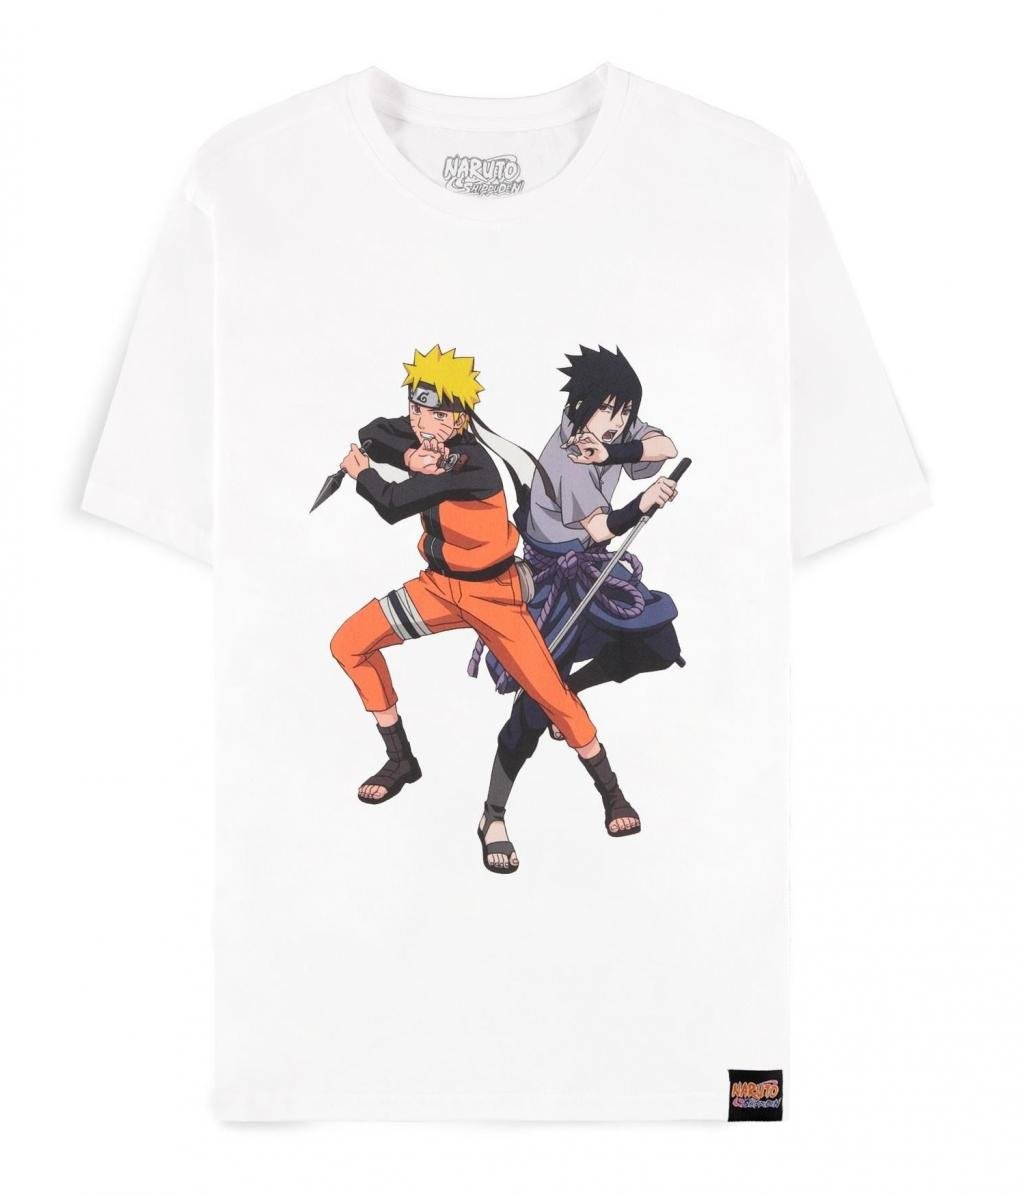 NARUTO SHIPPUDEN - Sasuke & Naruto - Men's T-Shirt (2XL)